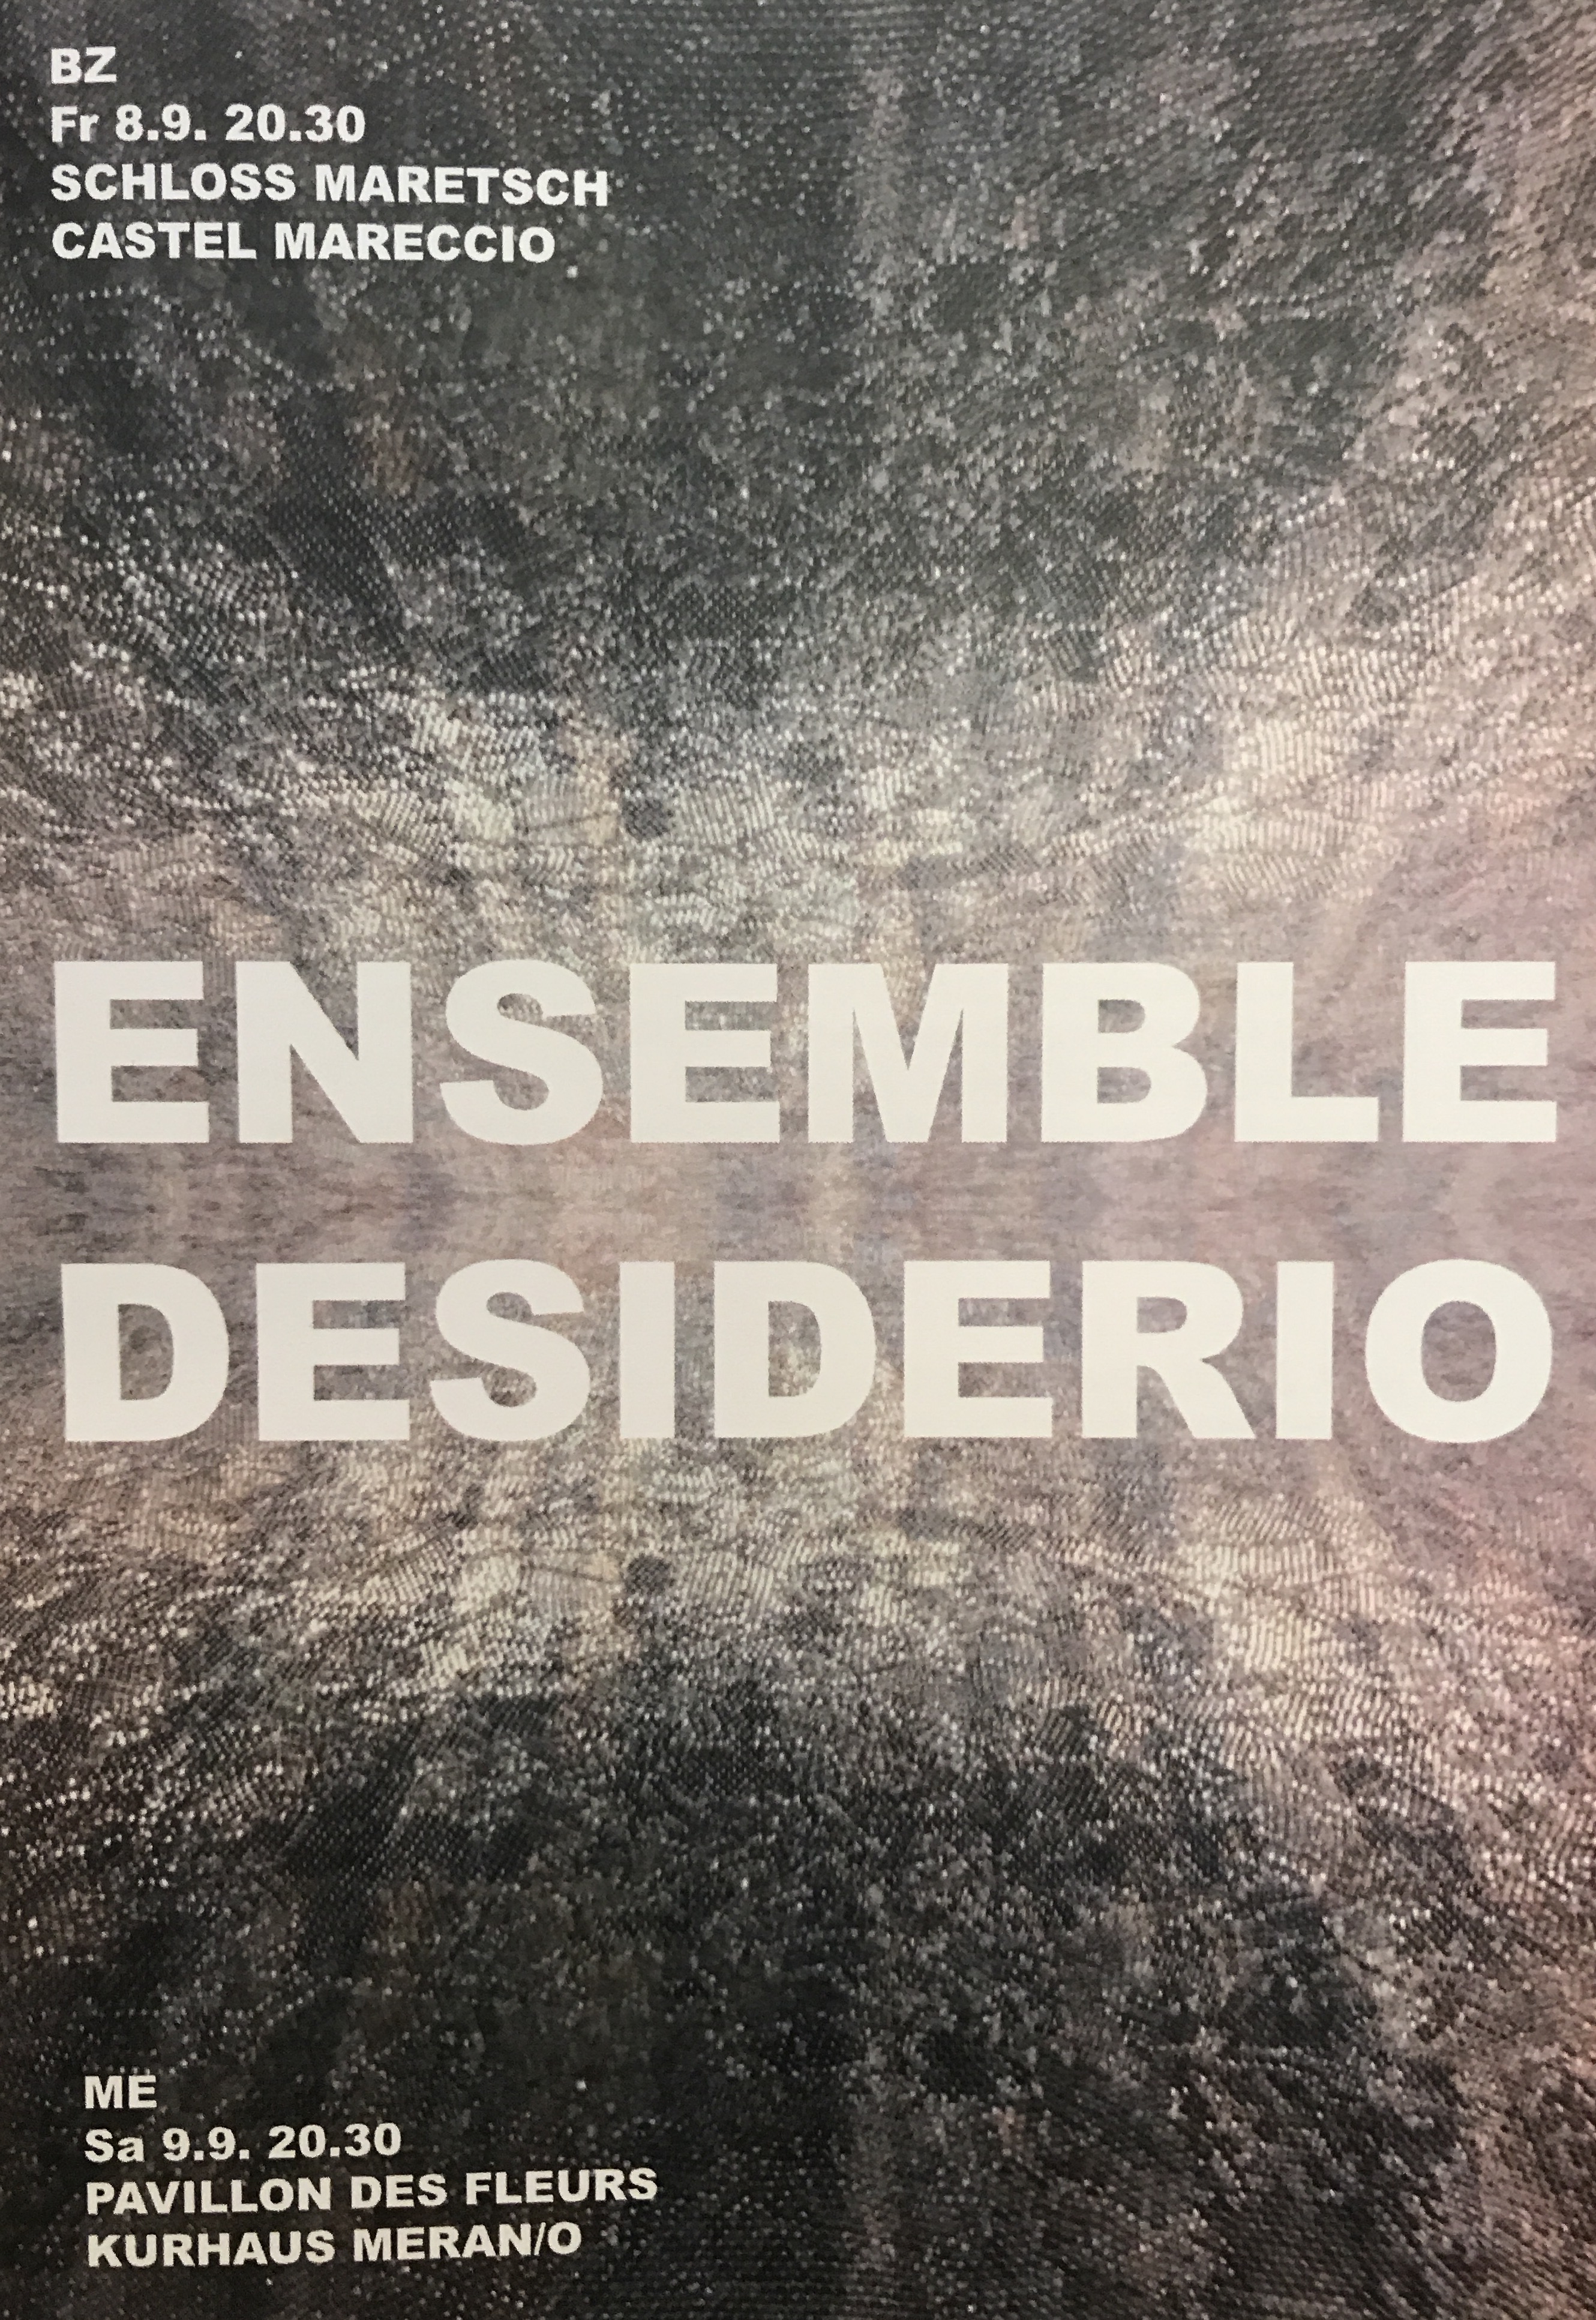 09.09.2017 – Ensemble Desiderio – Mahler Symphony No. 4